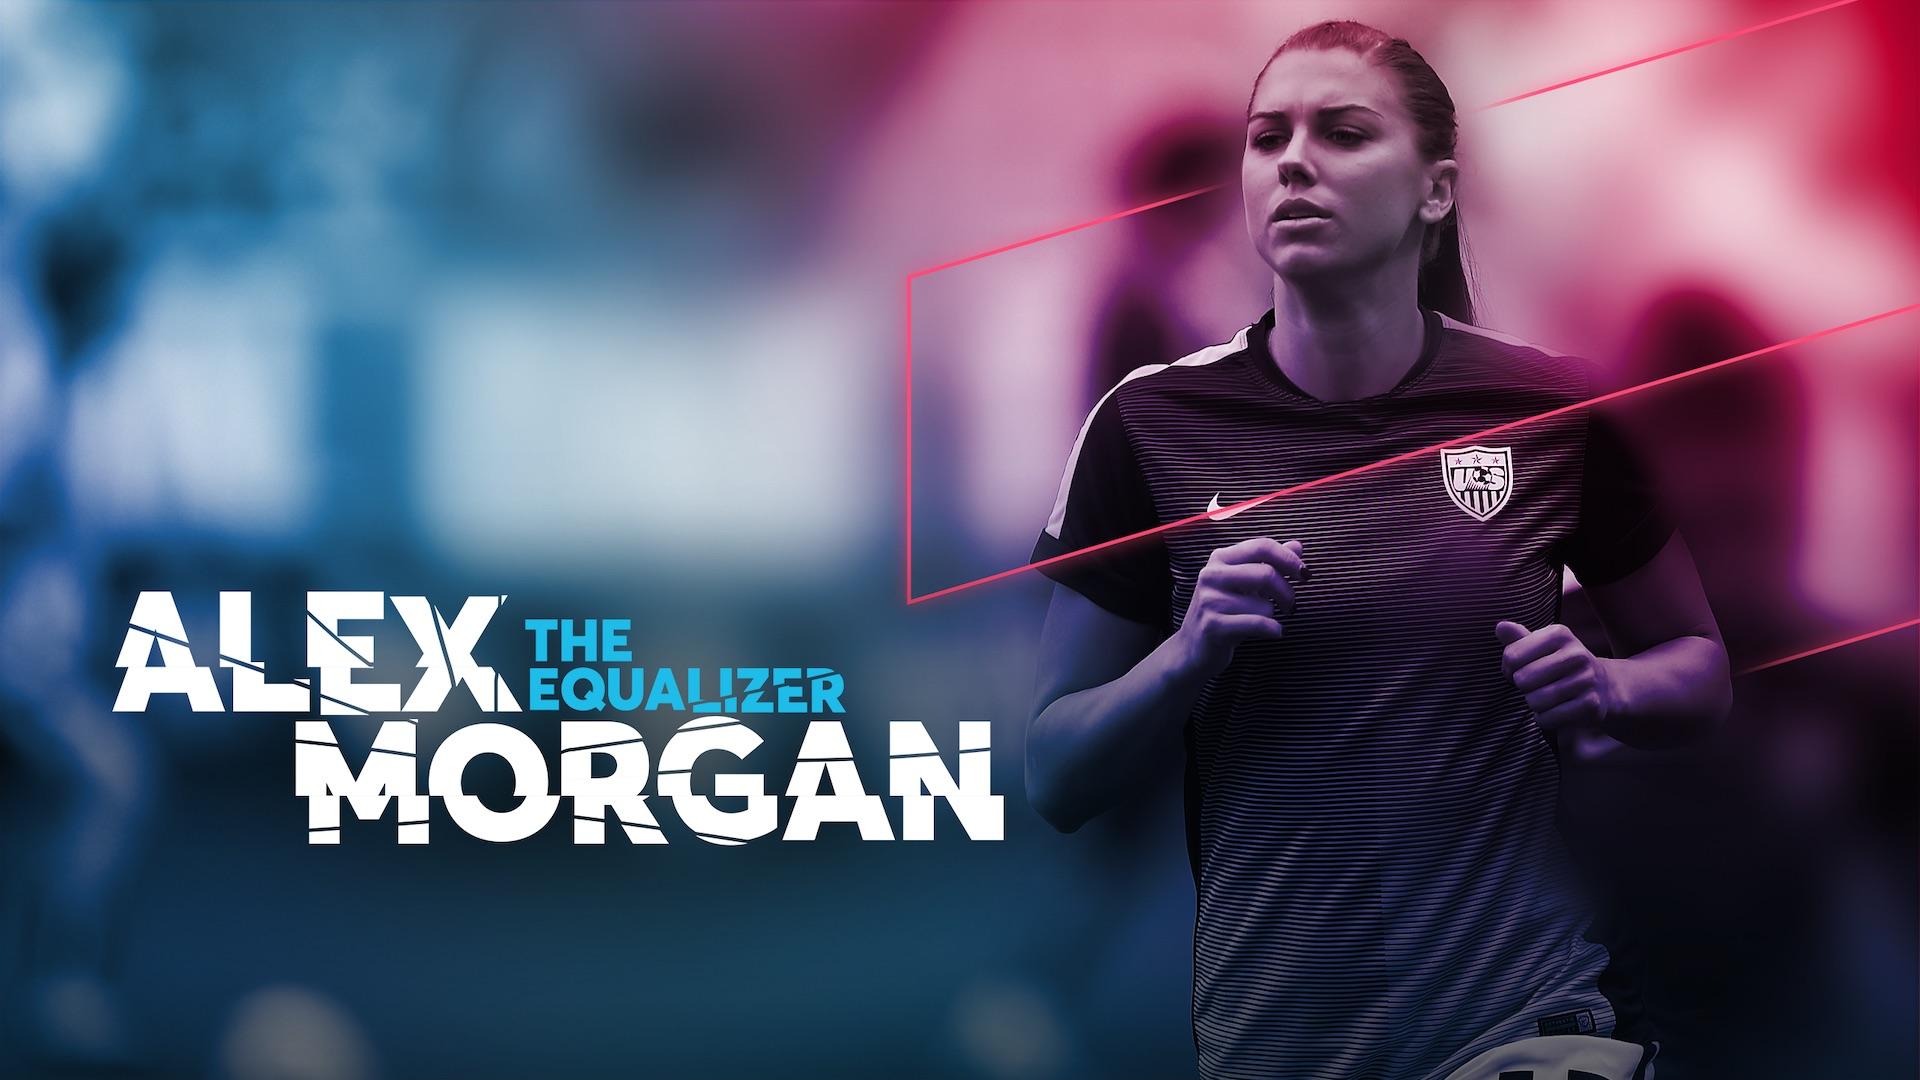 Alex Morgan: The Equalizer